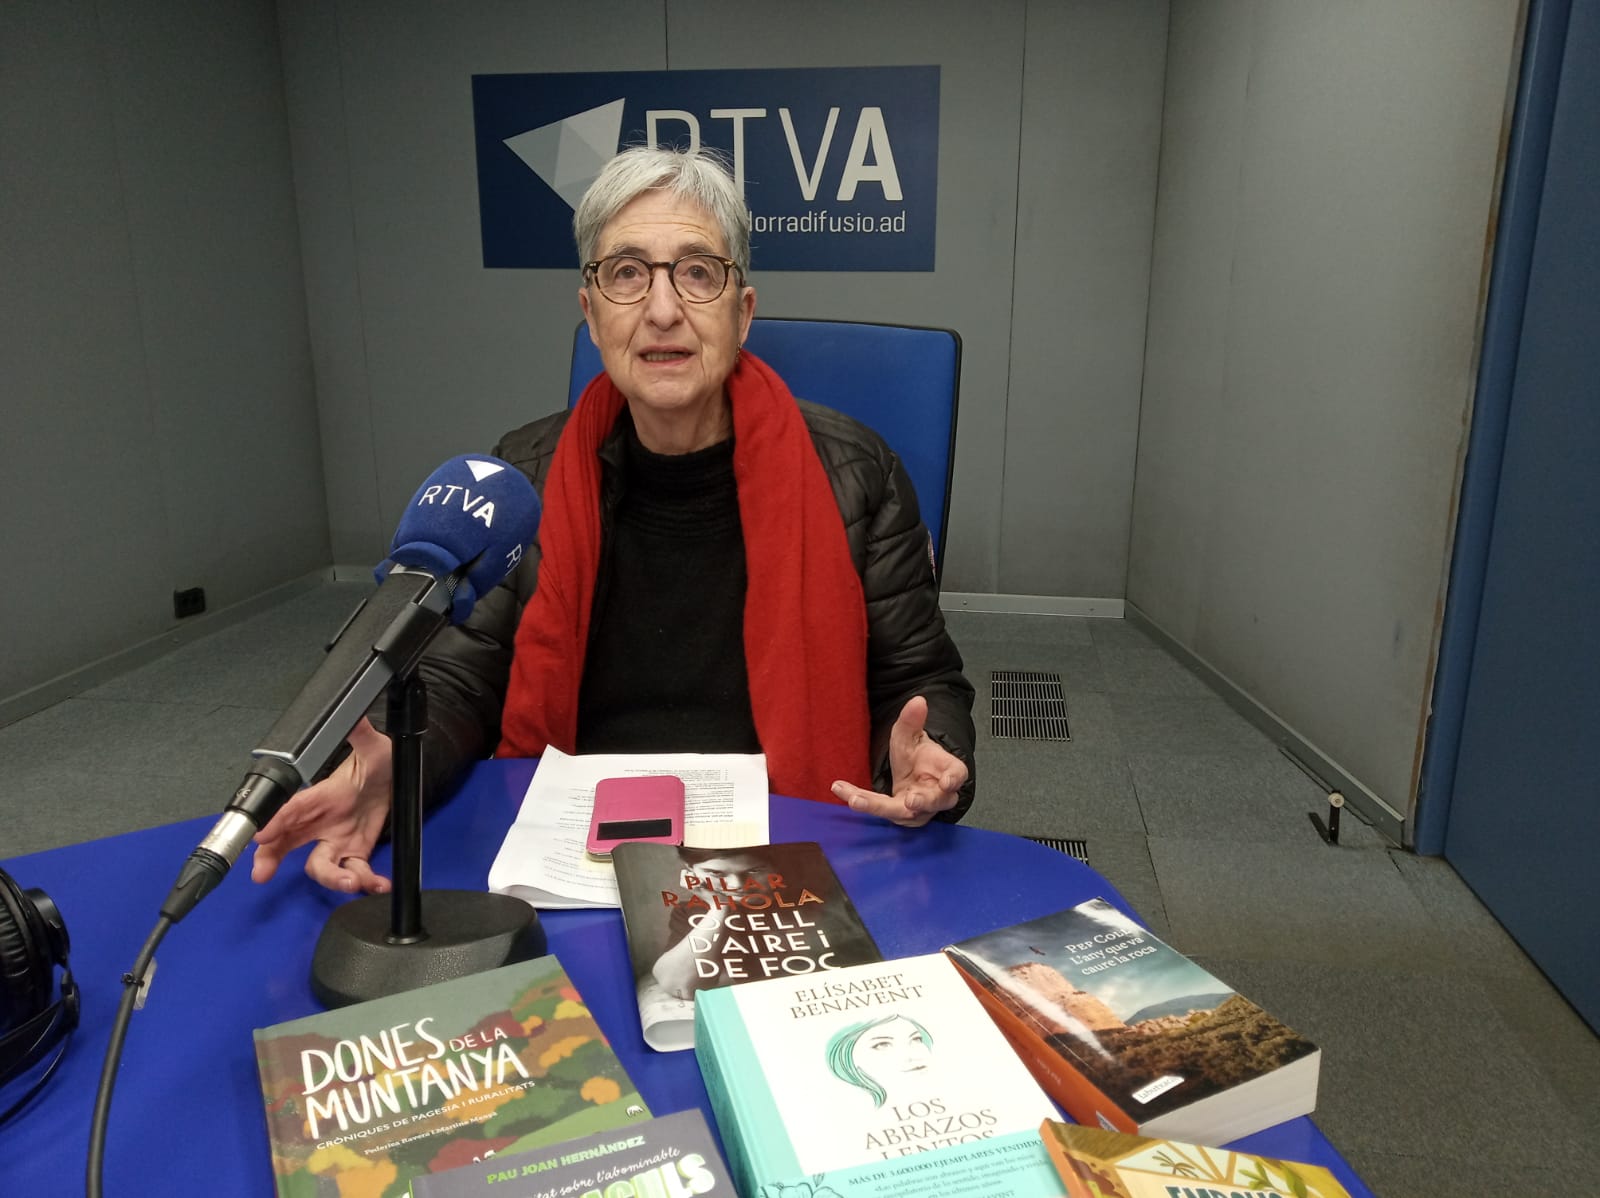 Obrim els llibres amb Anna Riberaygua